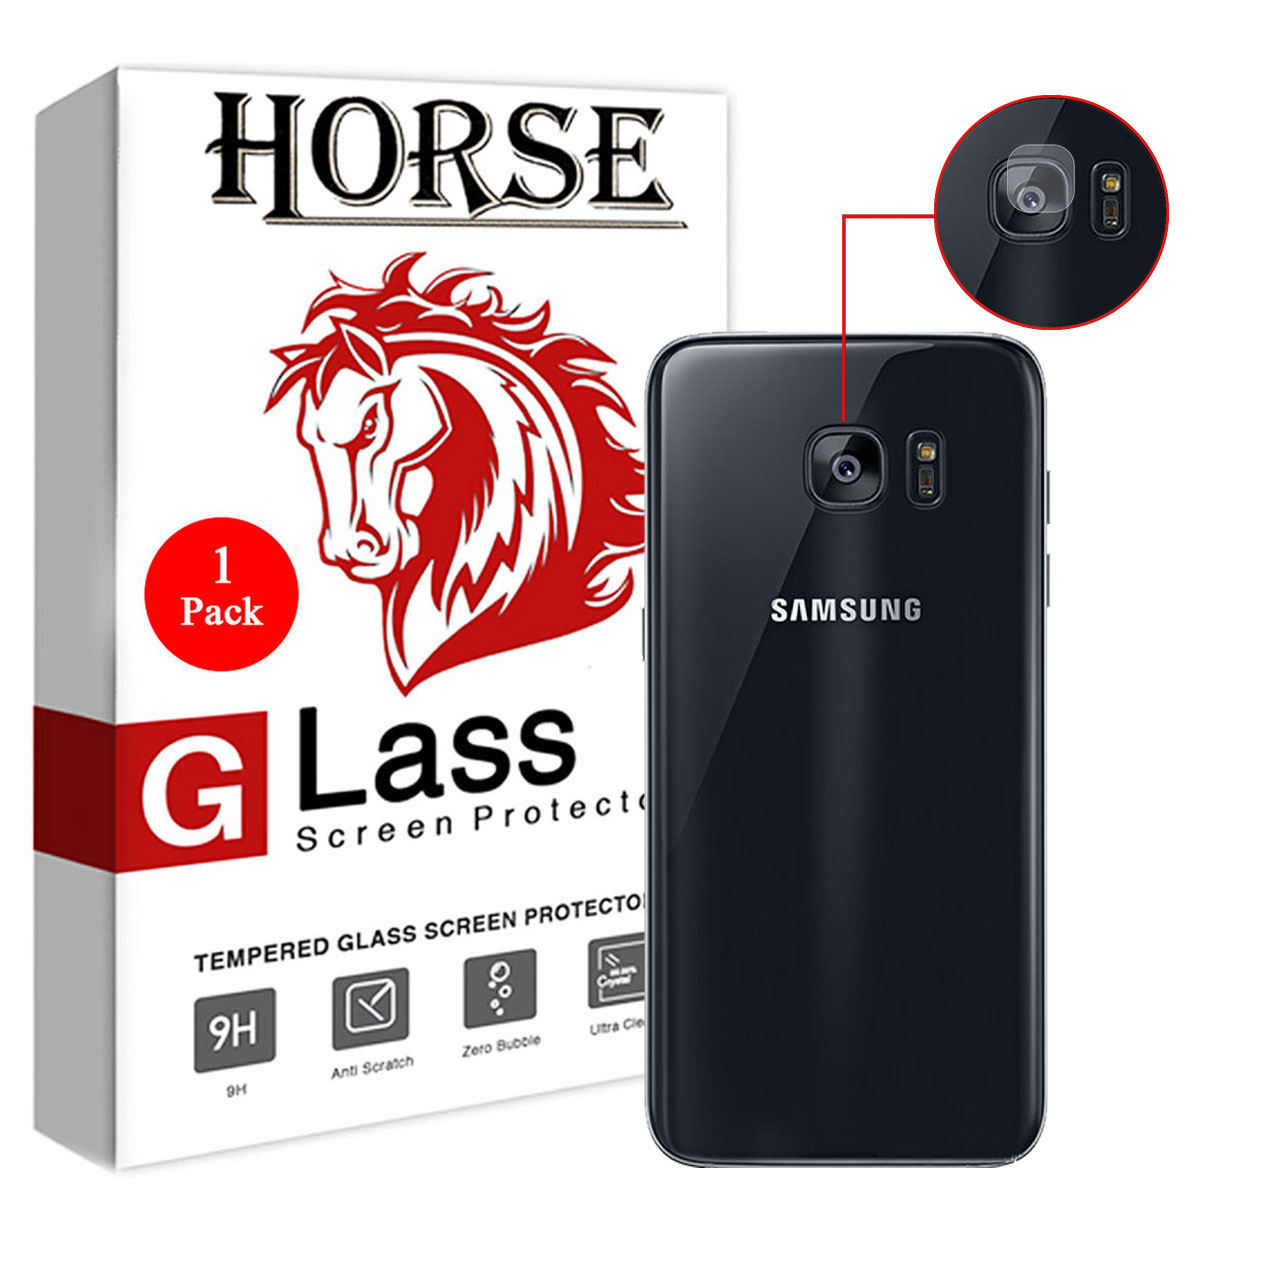 محافظ لنز دوربین هورس مدل UTF مناسب برای گوشی موبایل سامسونگ Galaxy S7 edge